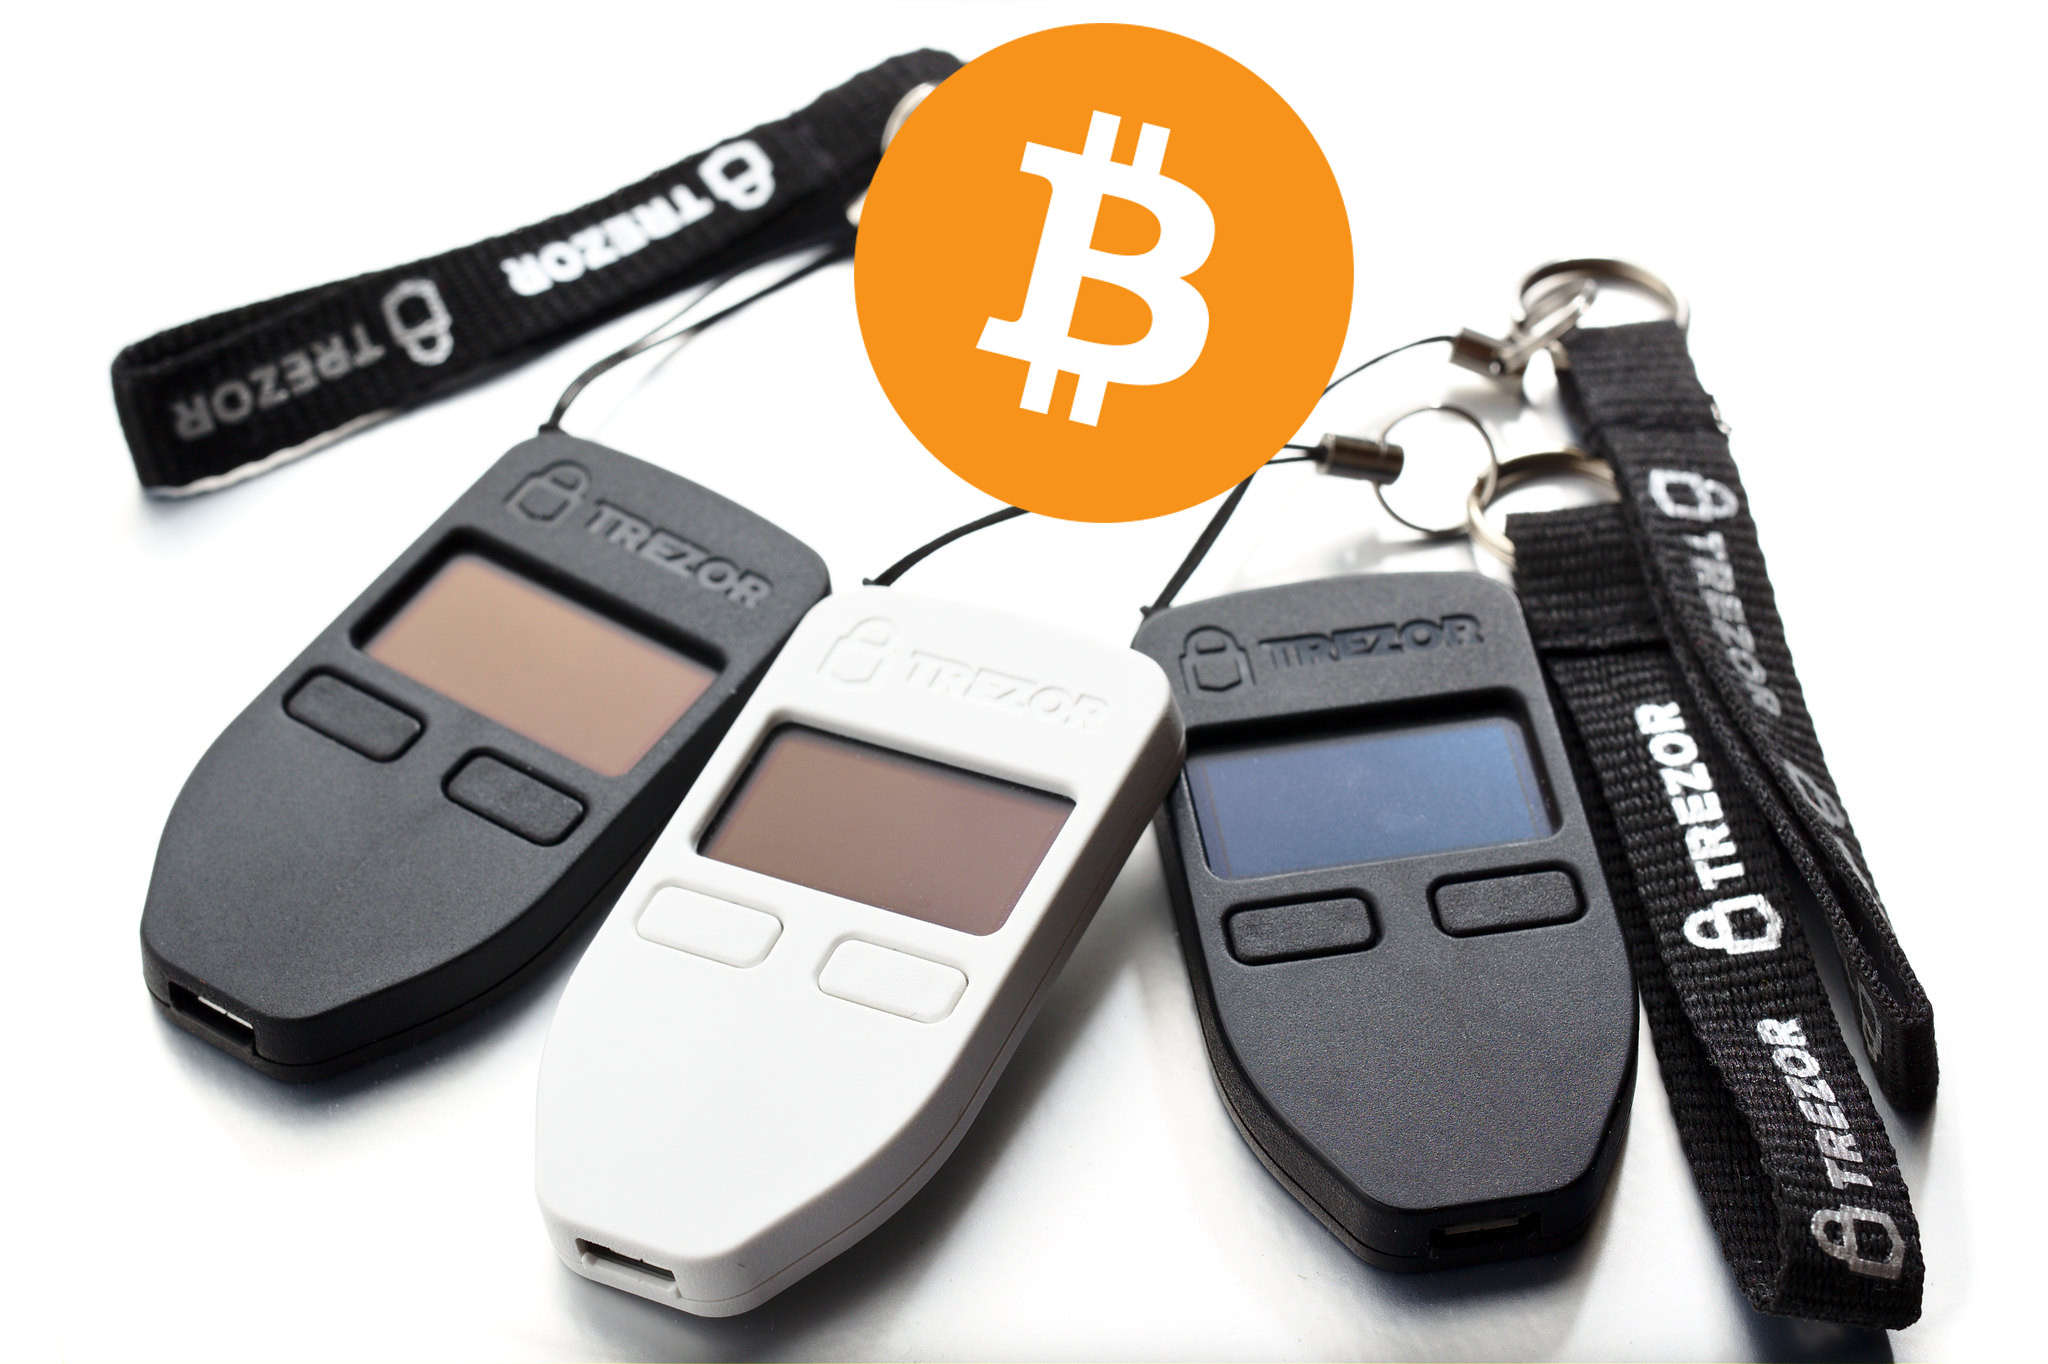 EILMELDUNG: Diese Bitcoin (BTC)-Wallet lässt sich in 15 Minuten knacken!